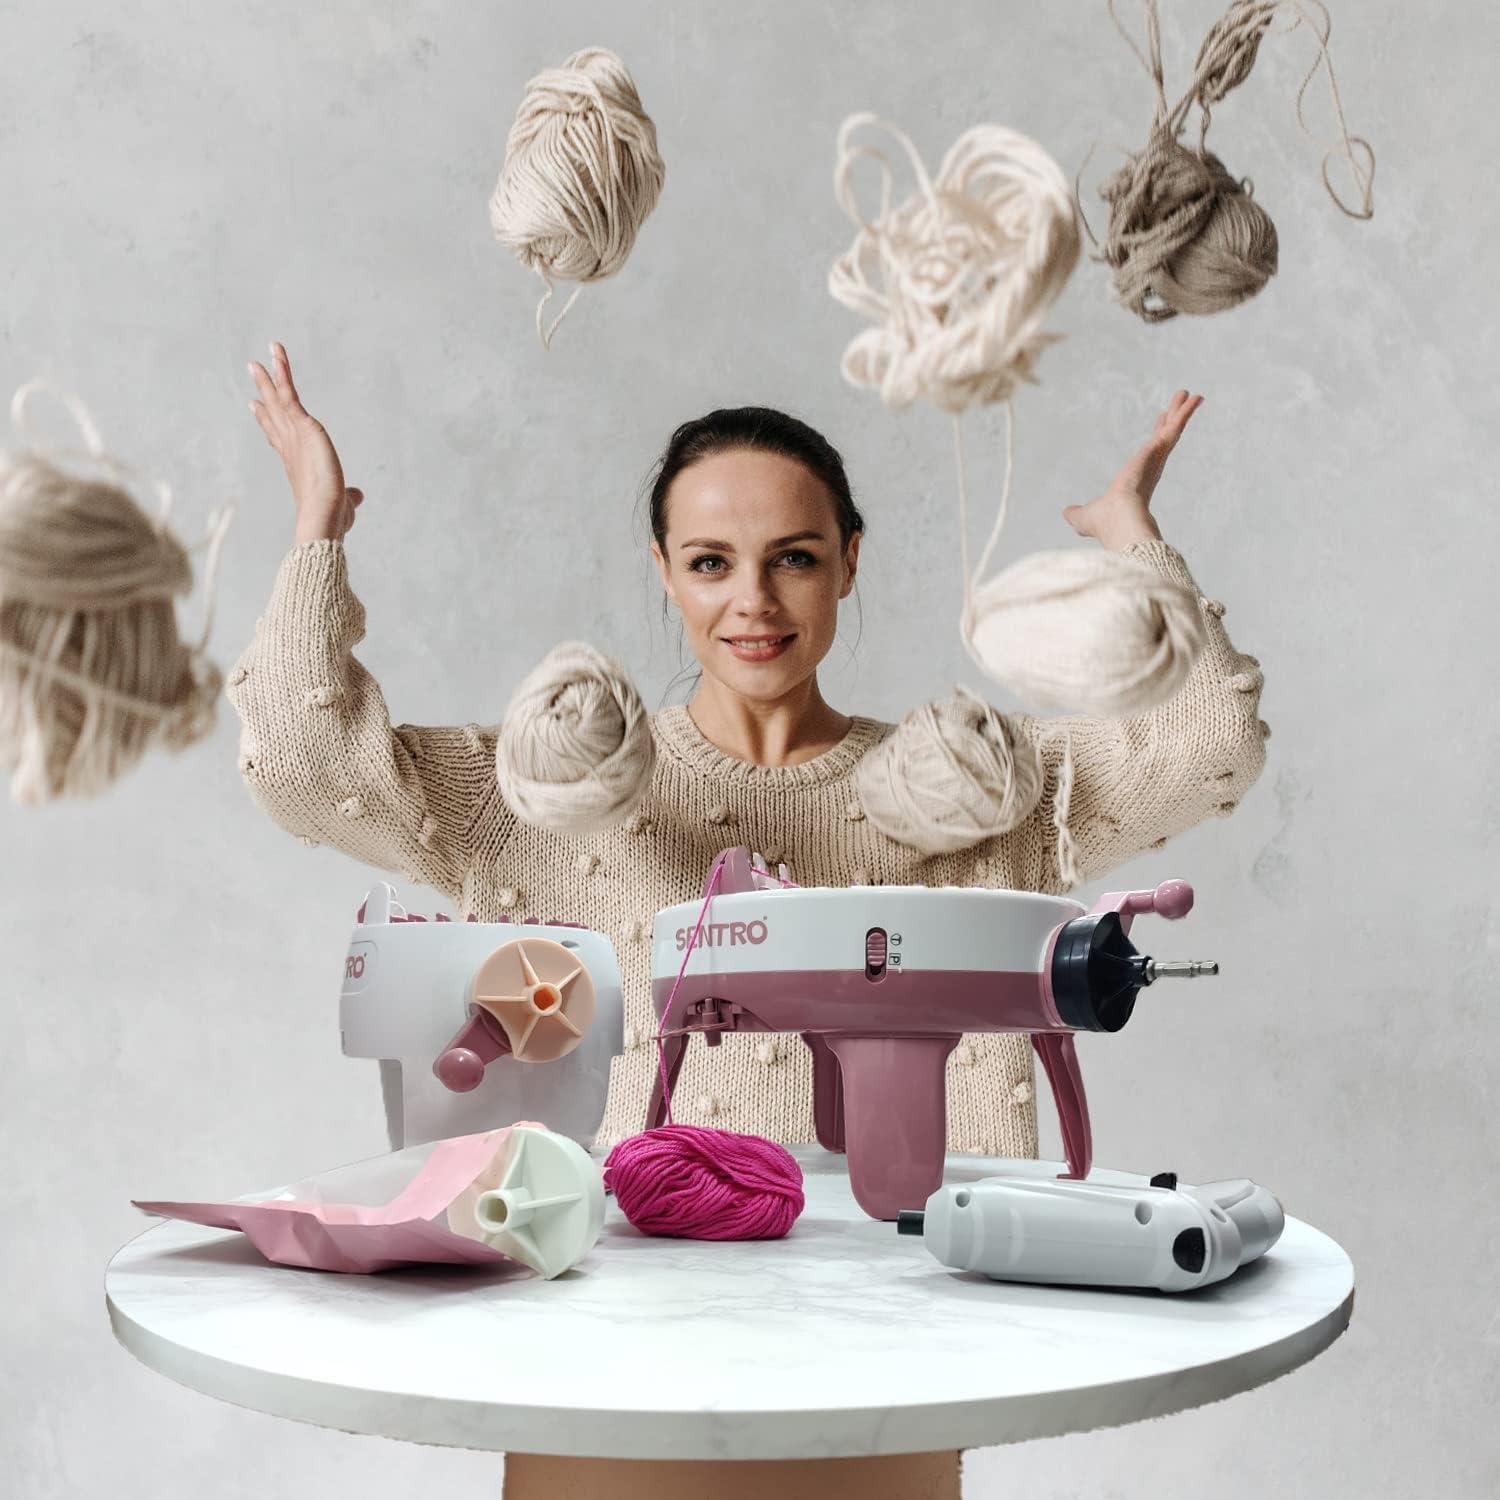 Loom Knitting Machine - Sentro Knitting Machines